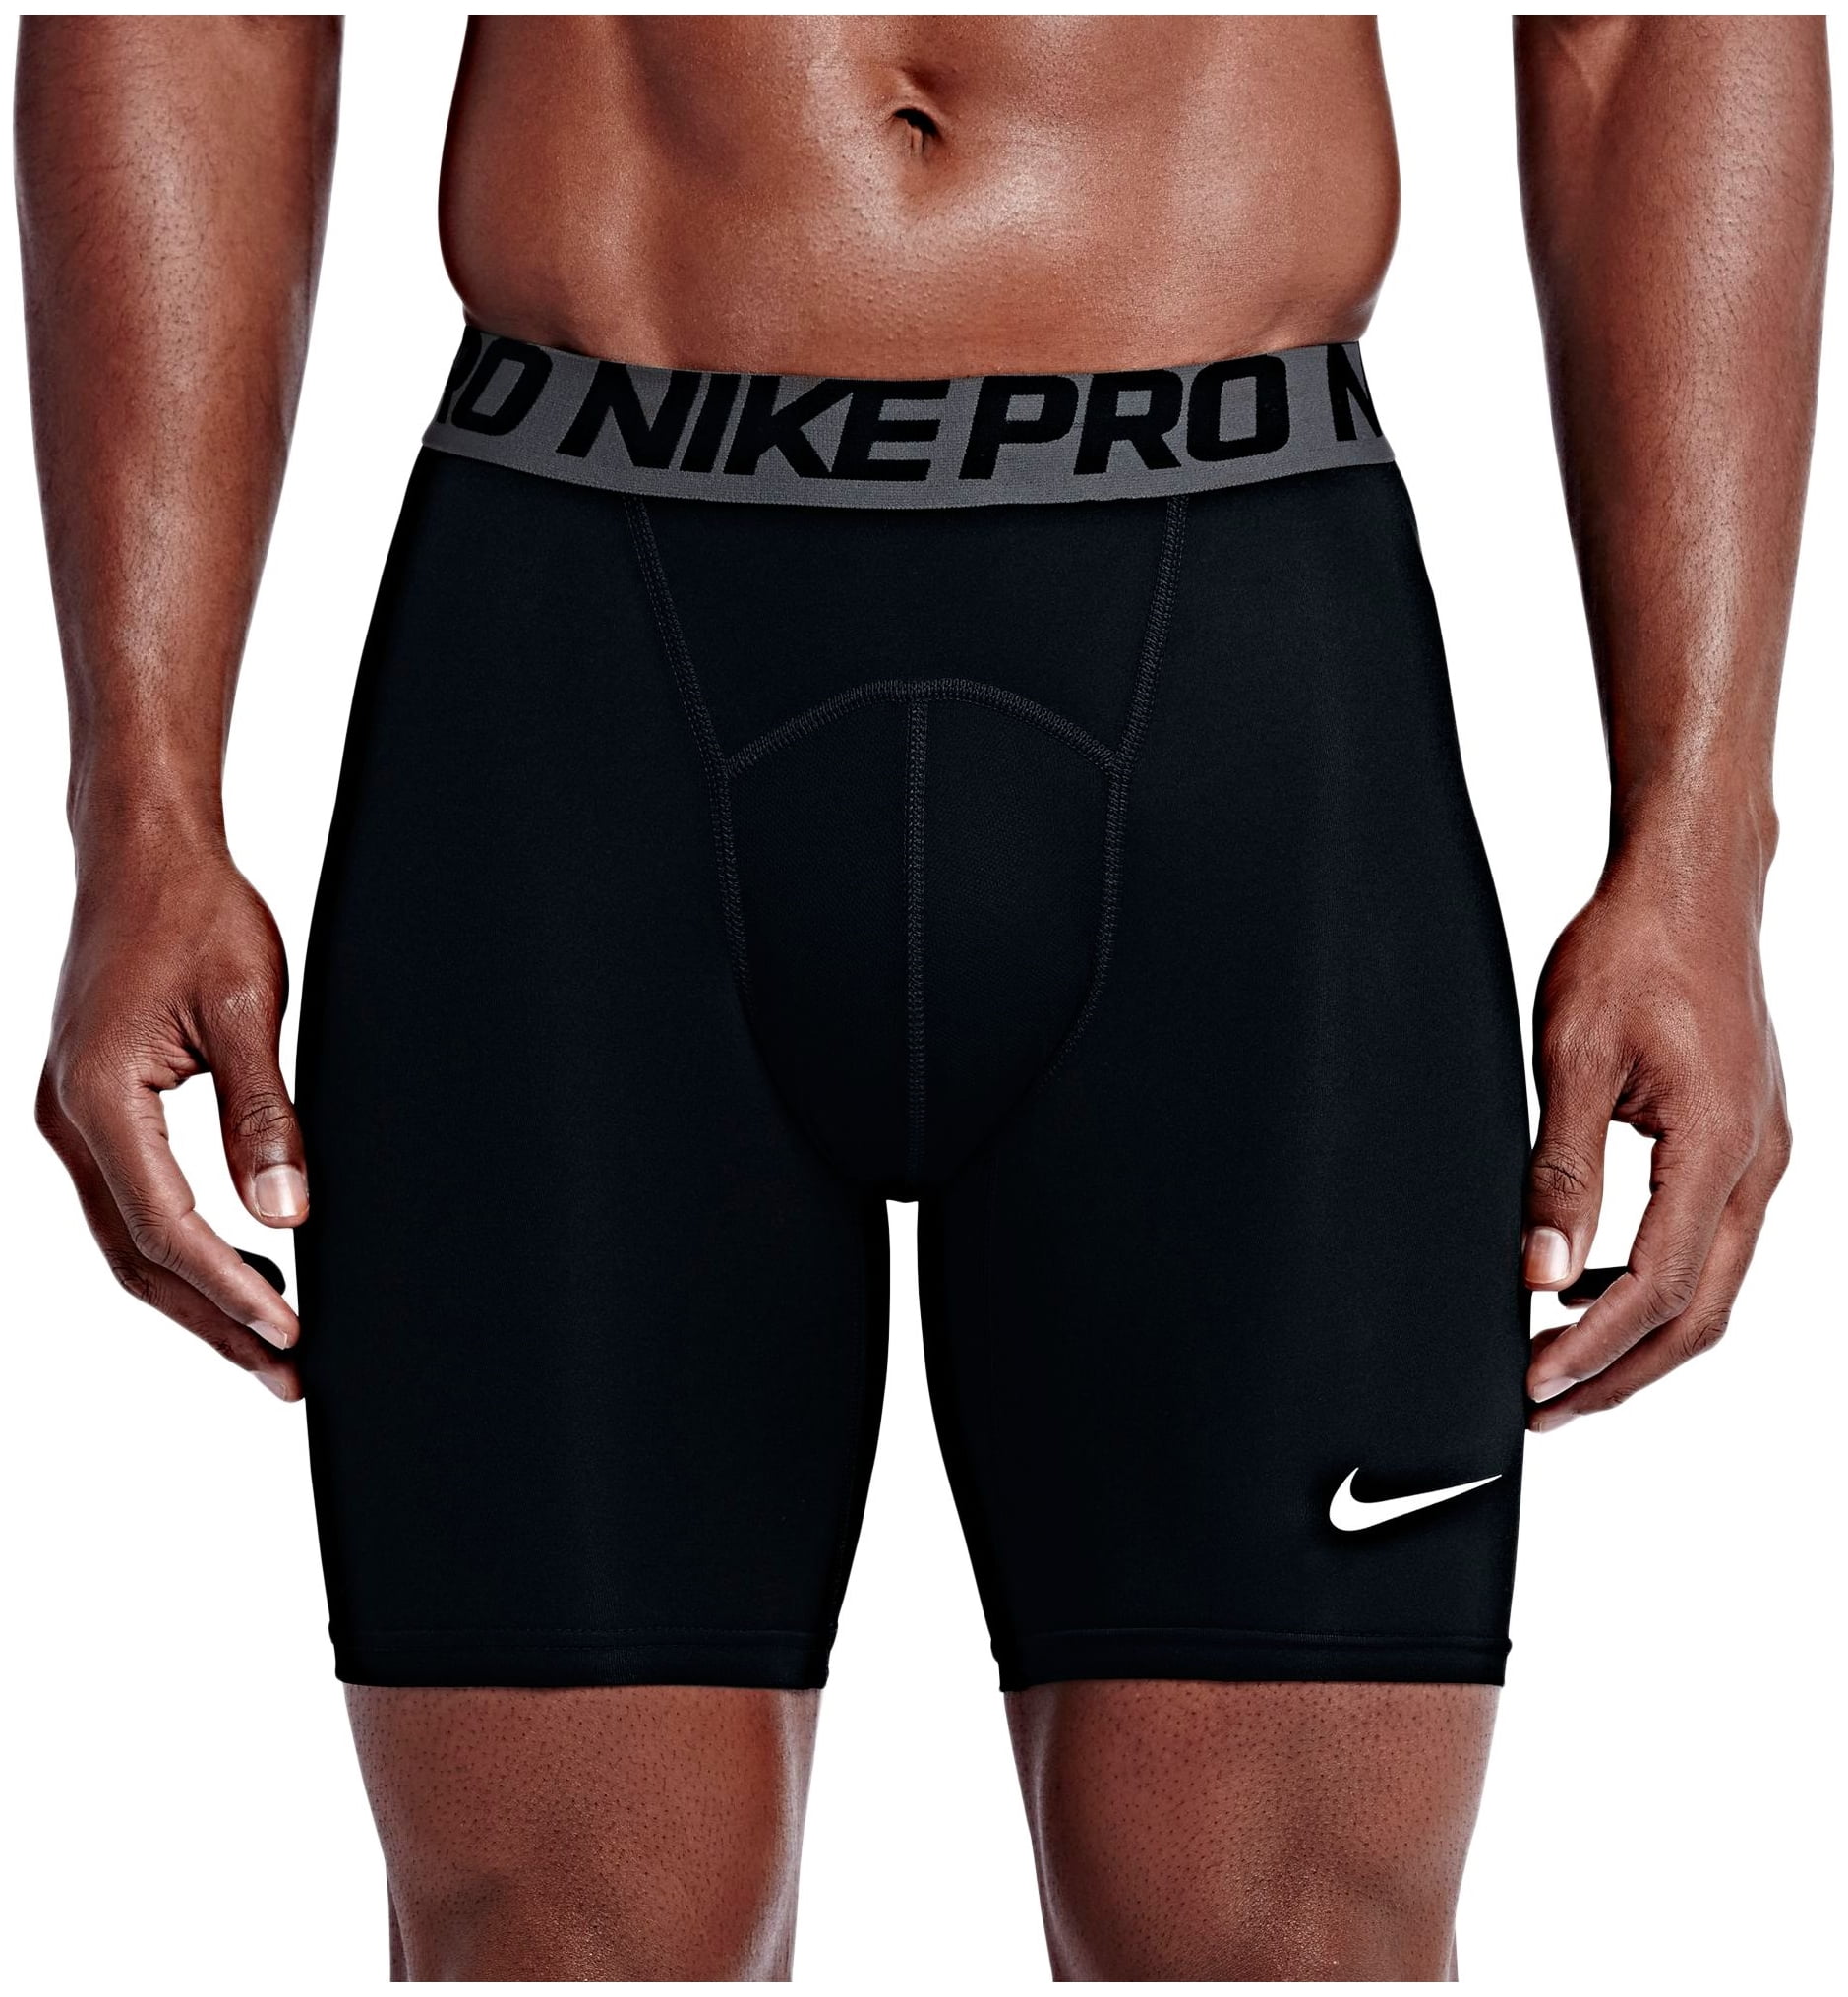 Шорты найк про. Шорты Nike Pro мужские. Компрессионные шорты мужские Nike. Компрессионные шорты Nike Pro. Nike Pro Combat Padded.